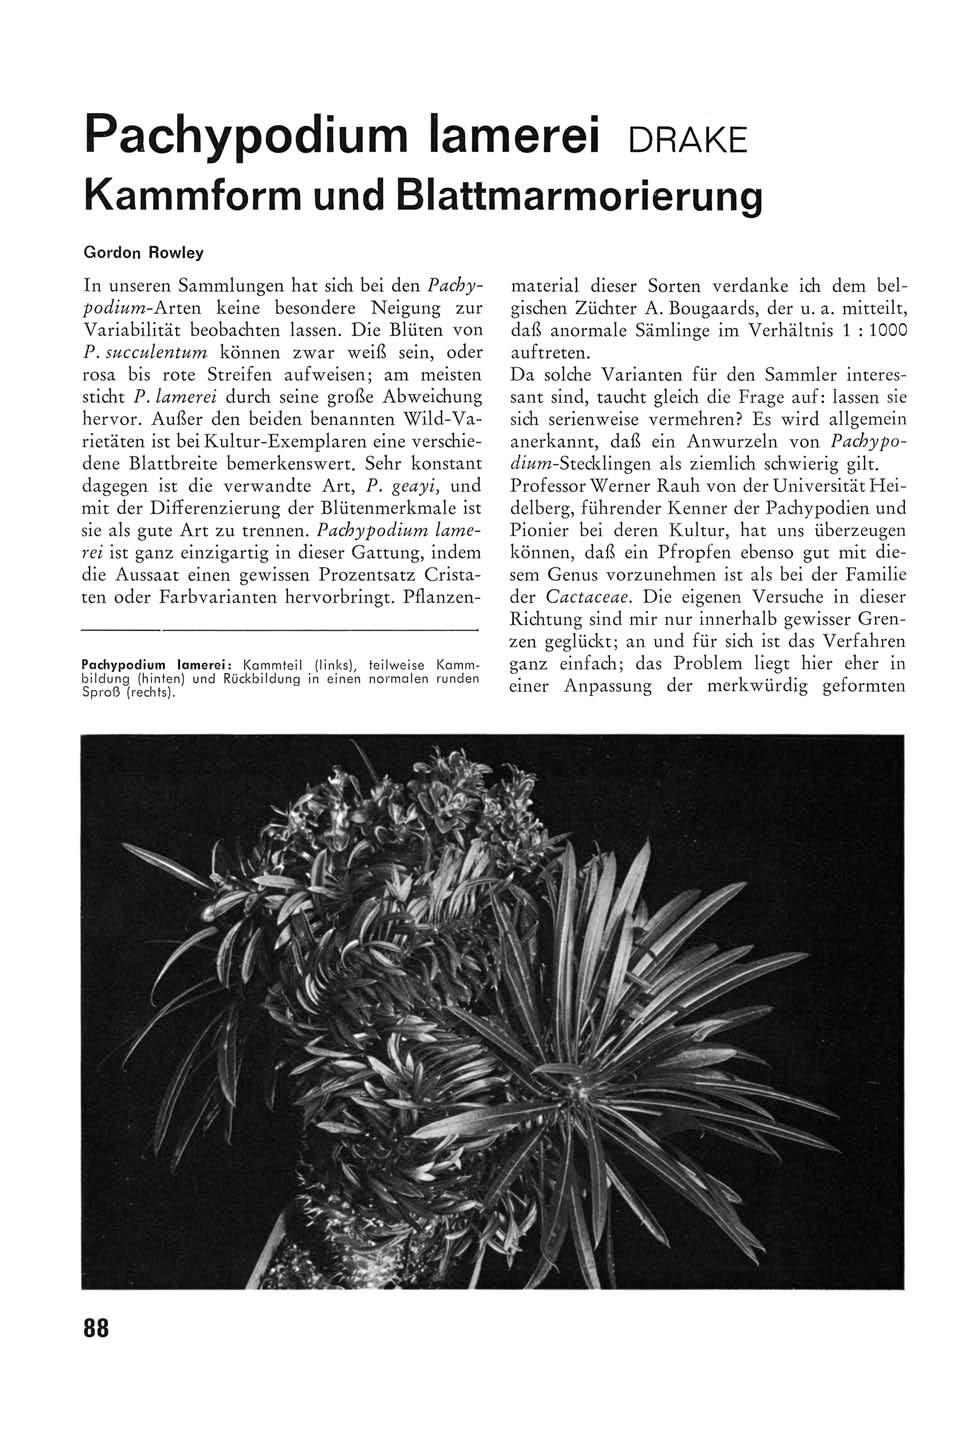 Pachypodium lamerei DRAKE Kammform und Blattmarmorierung Gordon Rowley In unseren Sammlungen hat sich bei den Pachypodium-Arten keine besondere Neigung zur Variabilität beobachten lassen.